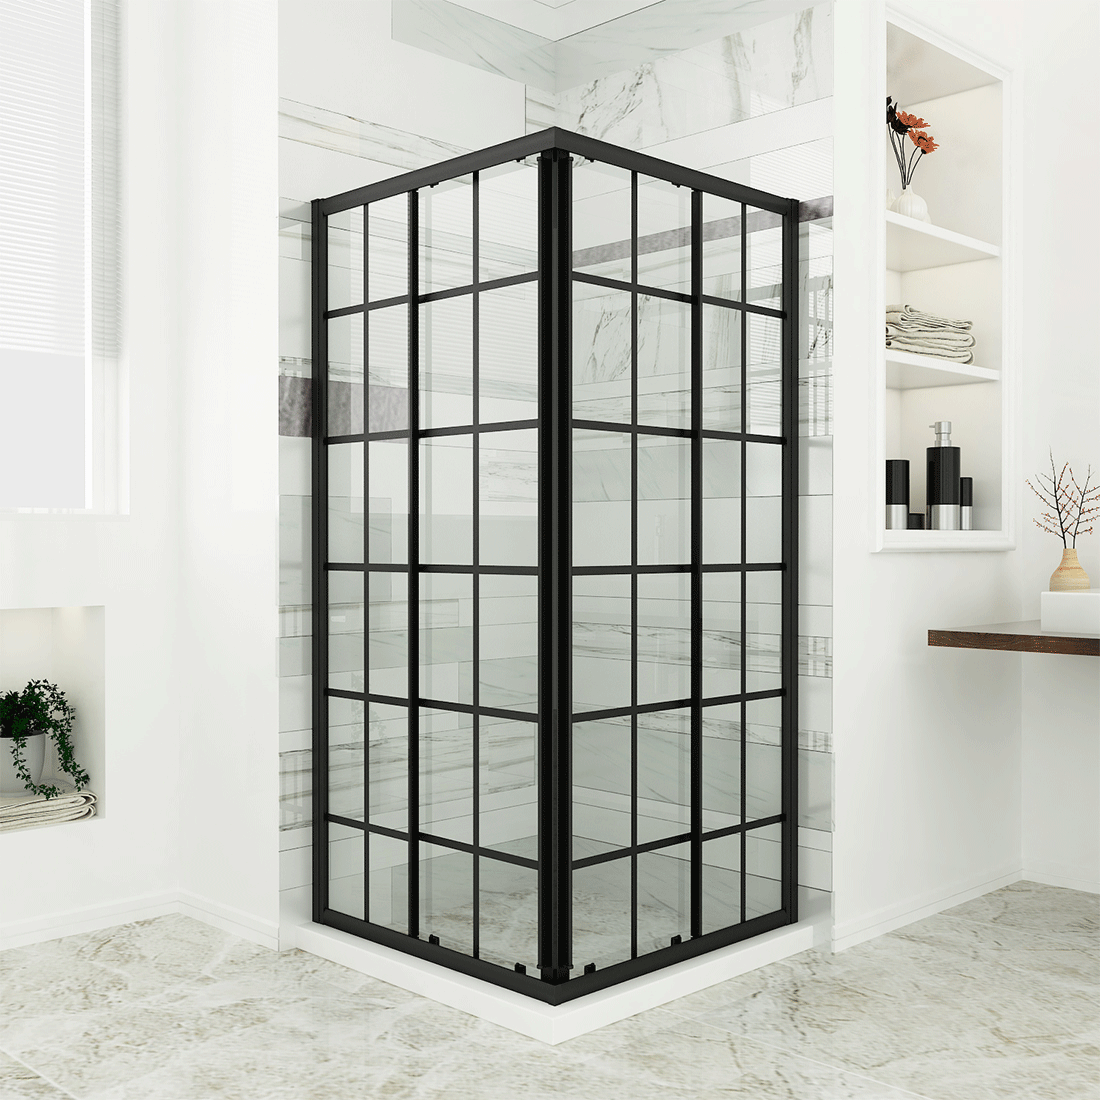 SL4U Shower Sliding Black Silk Screen Grid Pattern Corner Shower Door, Matte Black Framed, Opening Shower Clear Glass Shower Enclosure, 36''W x 36''D x 72''H.